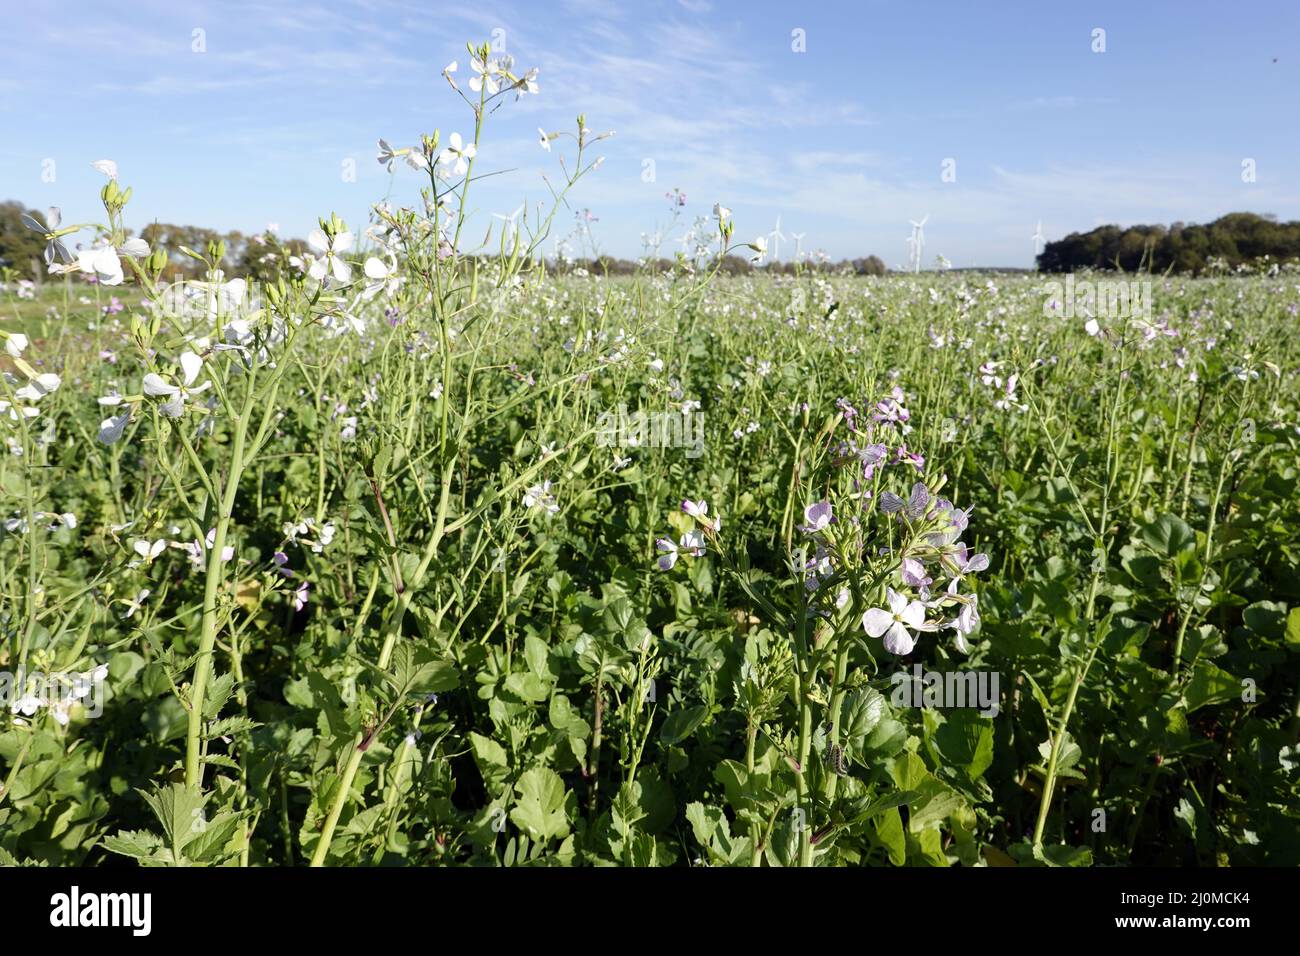 Field with oil radish (Raphanus sativus var. oleiformis) Stock Photo